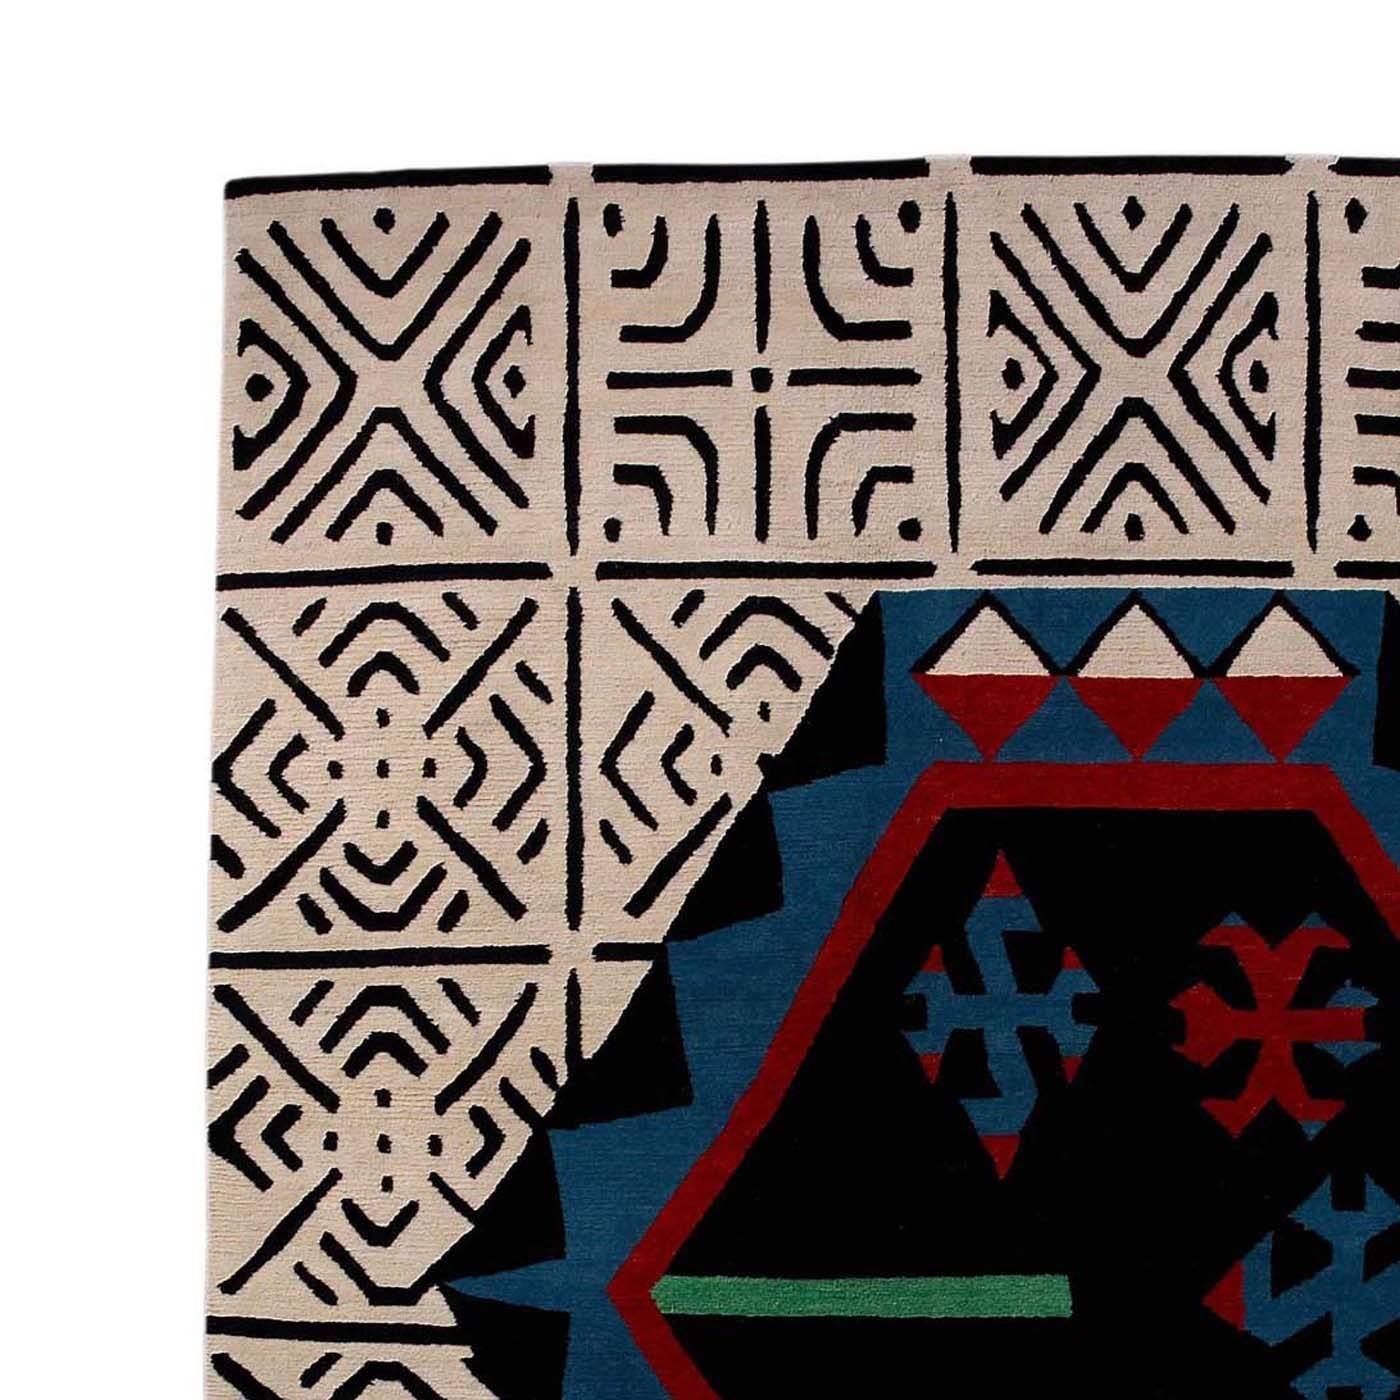 Une forme hexagonale orne le centre de ce tapis en laine, ajoutant une touche moderne à son fond délicat. D'un design intemporel, ce tapis de N. Vigo est un exemple exquis du savoir-faire artisanal traditionnel. Il a été entièrement fabriqué à la